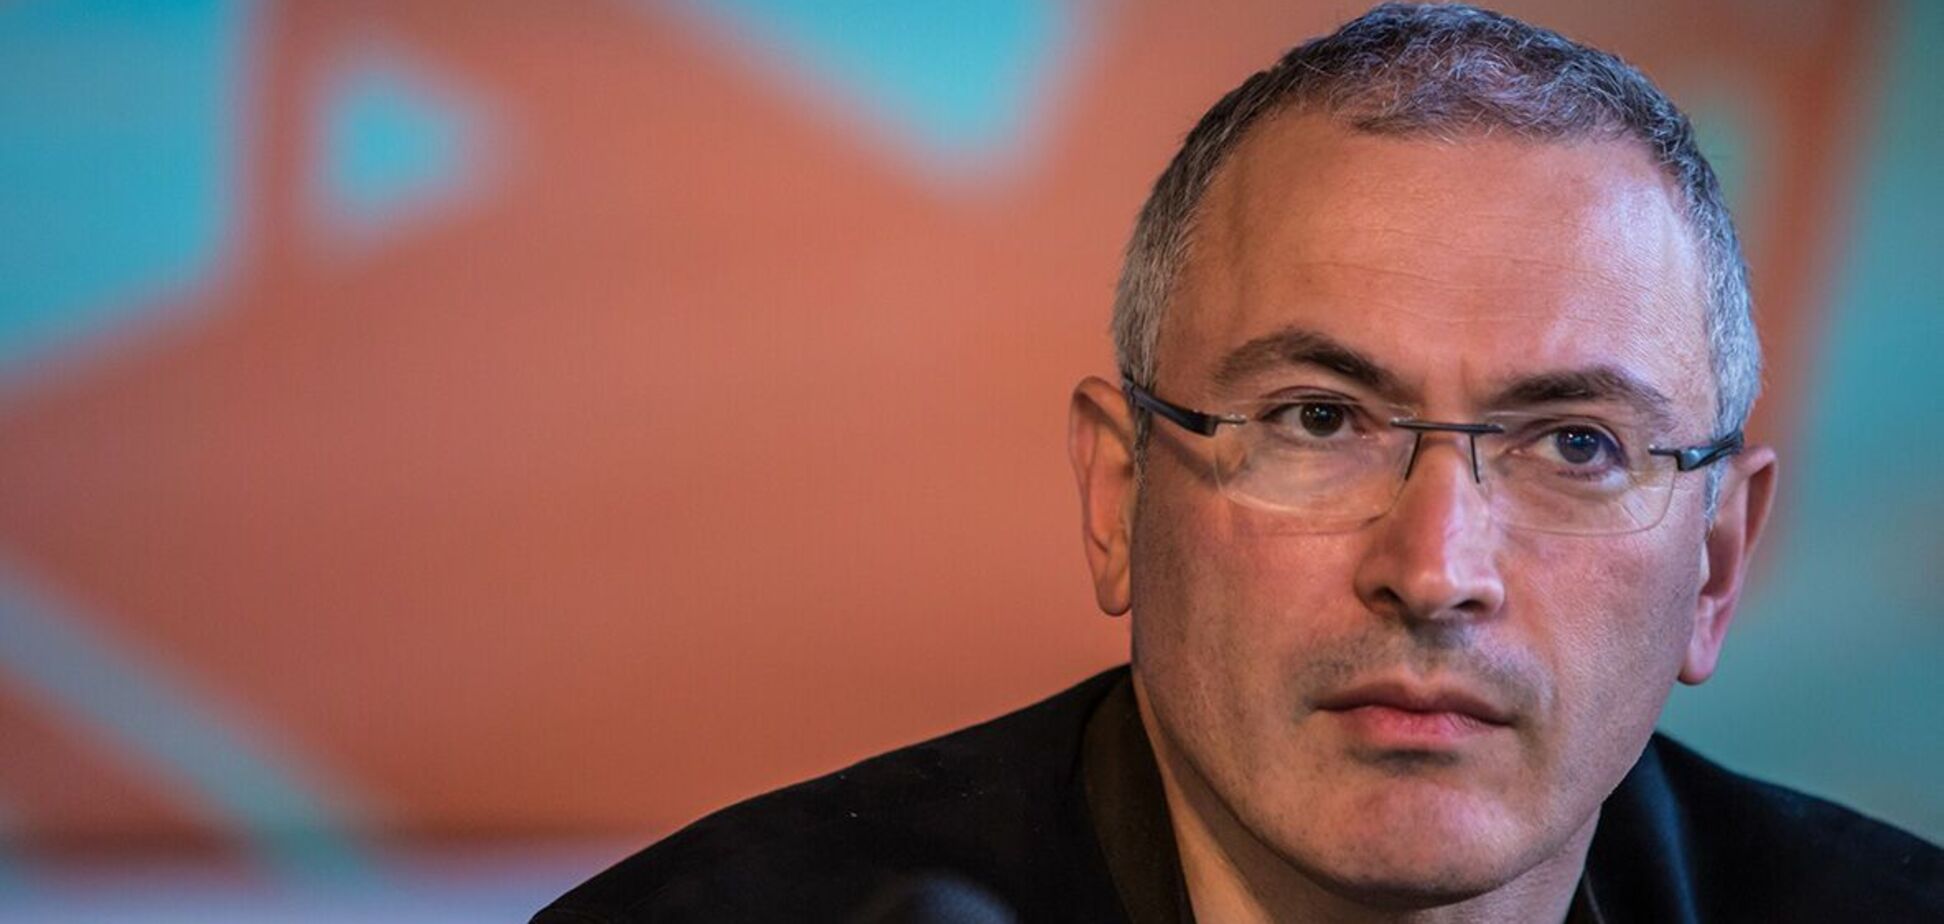 Михаил Ходорковский